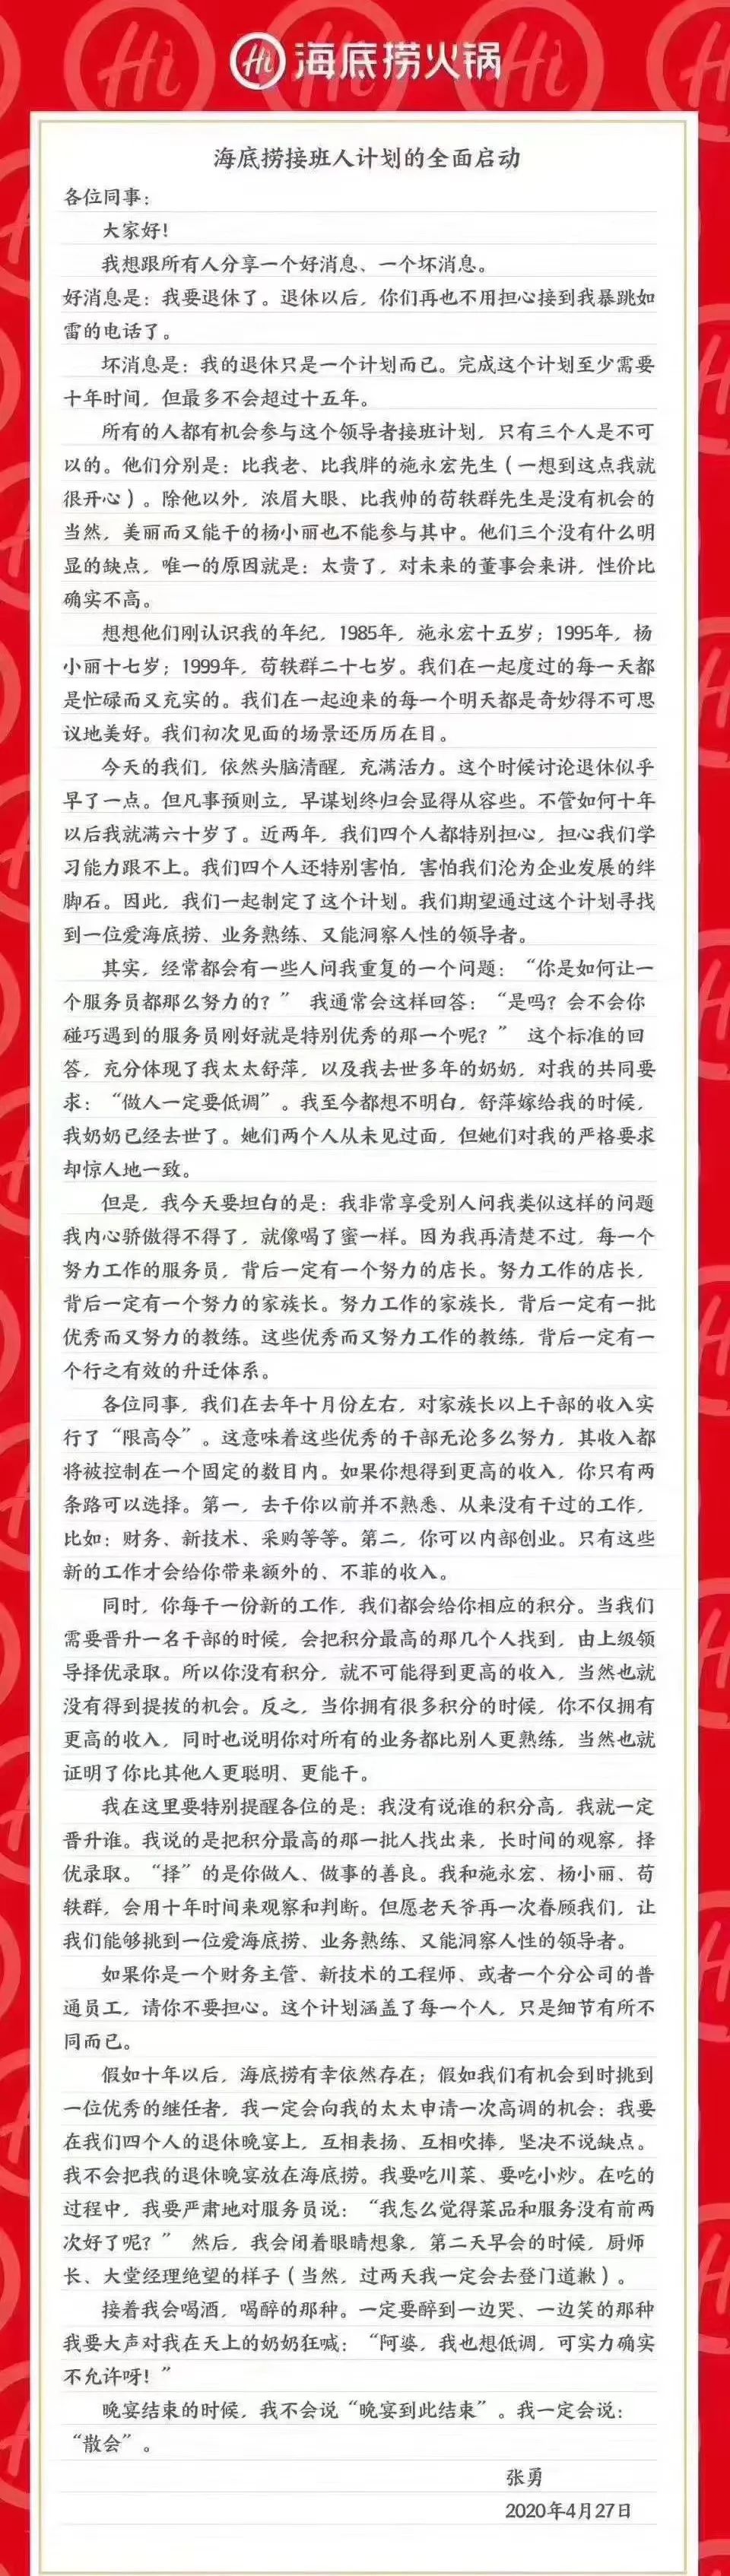 郑州取消“认房又认贷”并非调控变调的信号适合小学生的线上英语